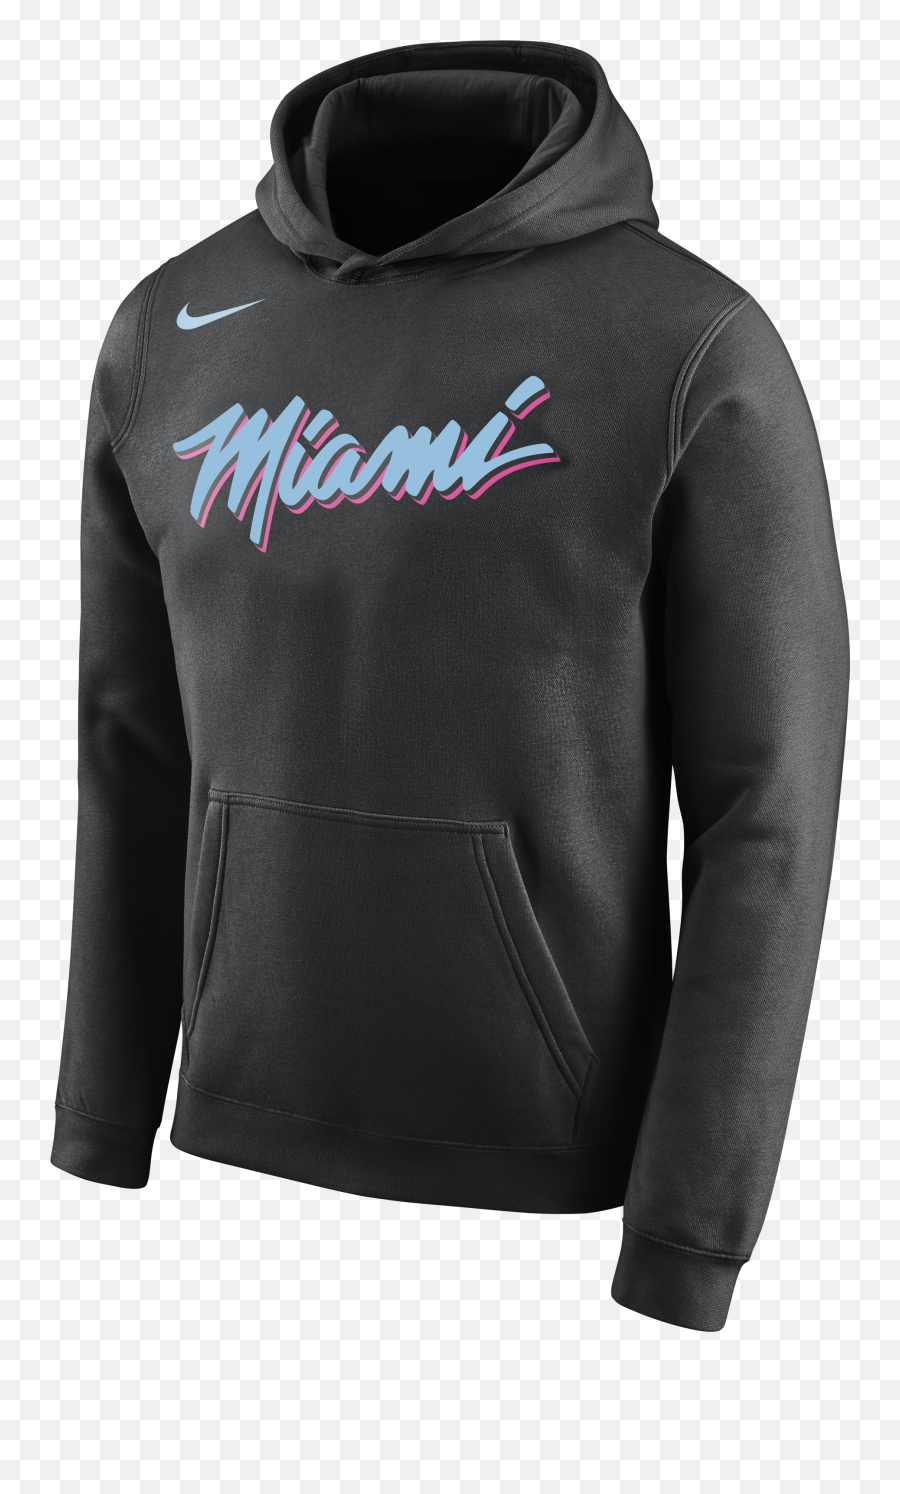 Black Nike Check Hoodie Shop Clothing U0026 Shoes Online - Miami City Edition Hoodie Emoji,Black Nike Logo